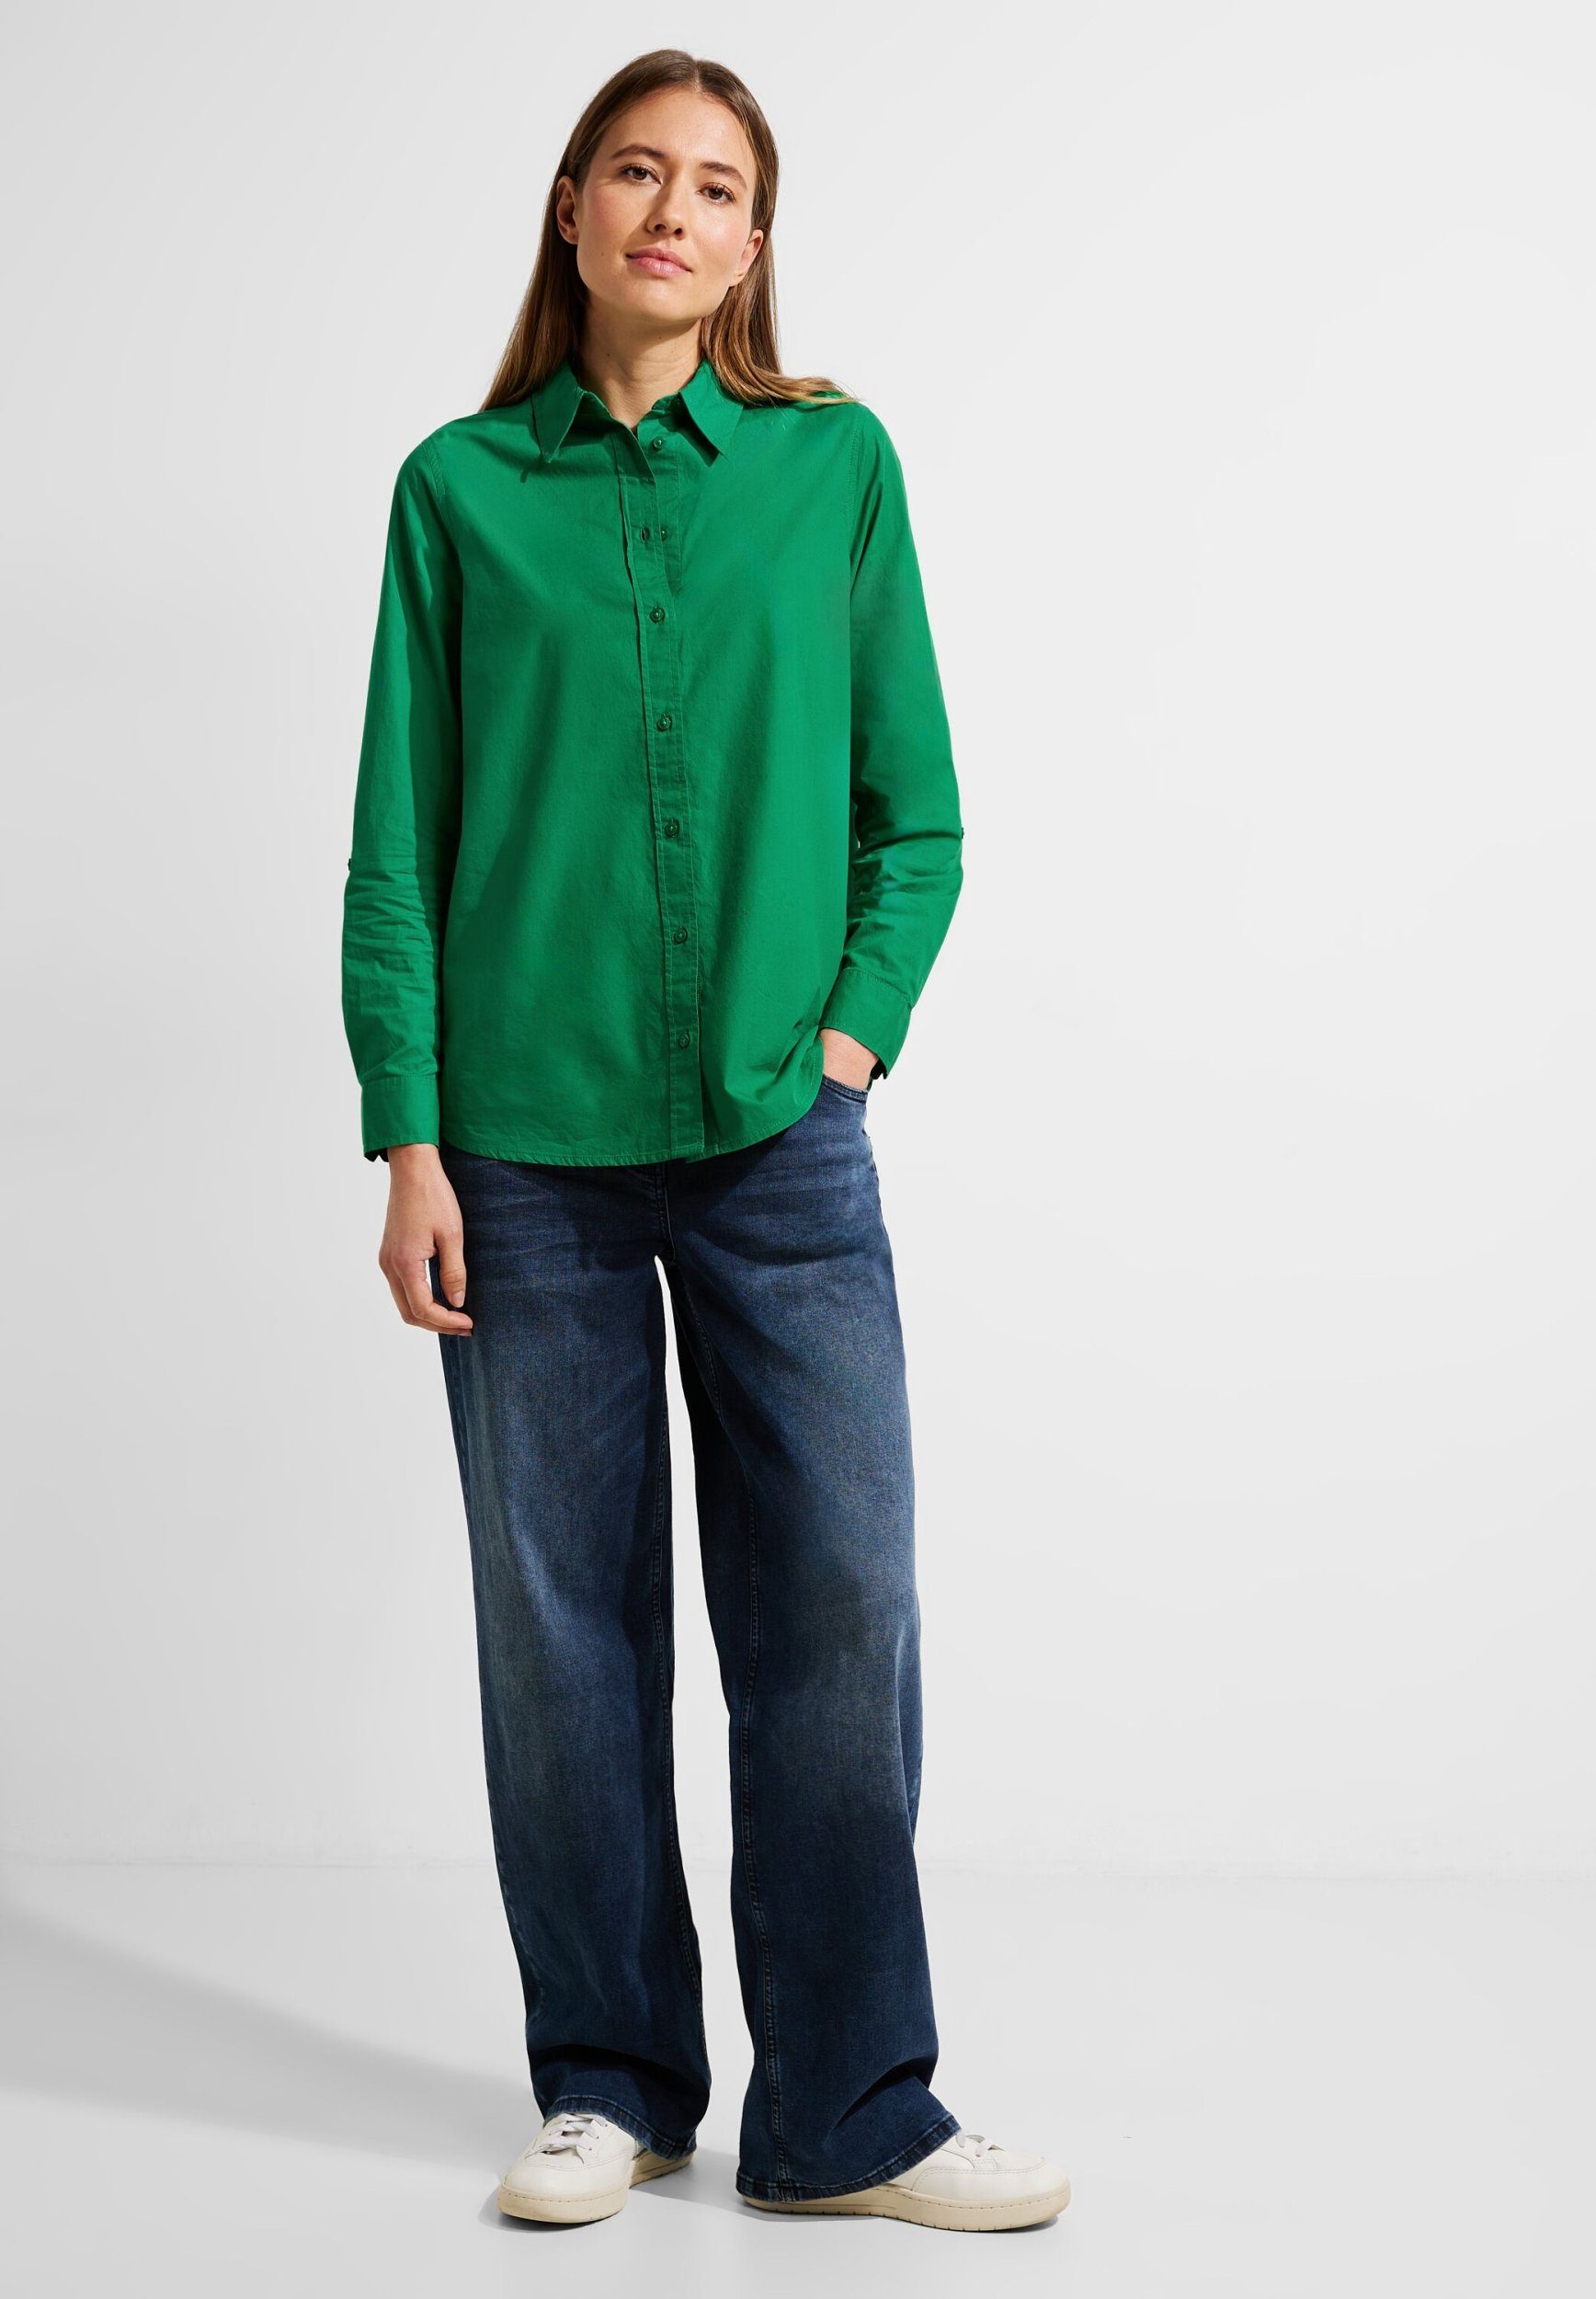 Bluse Bluse aus green Cecil easy Klassische Baumwolle Lange